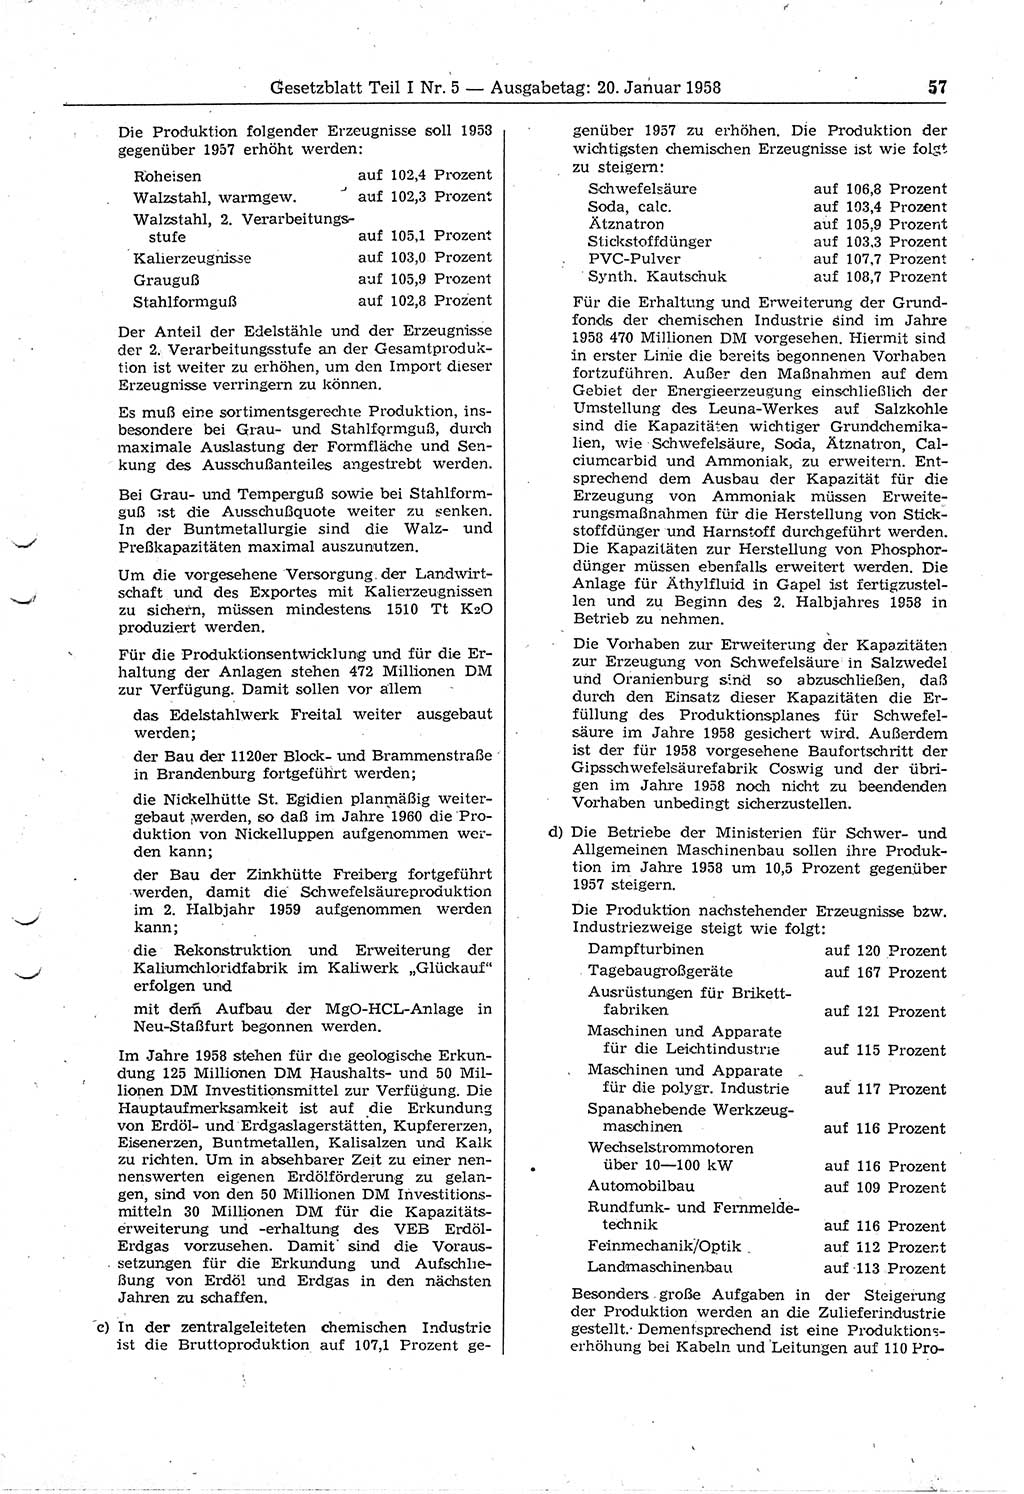 Gesetzblatt (GBl.) der Deutschen Demokratischen Republik (DDR) Teil Ⅰ 1958, Seite 57 (GBl. DDR Ⅰ 1958, S. 57)